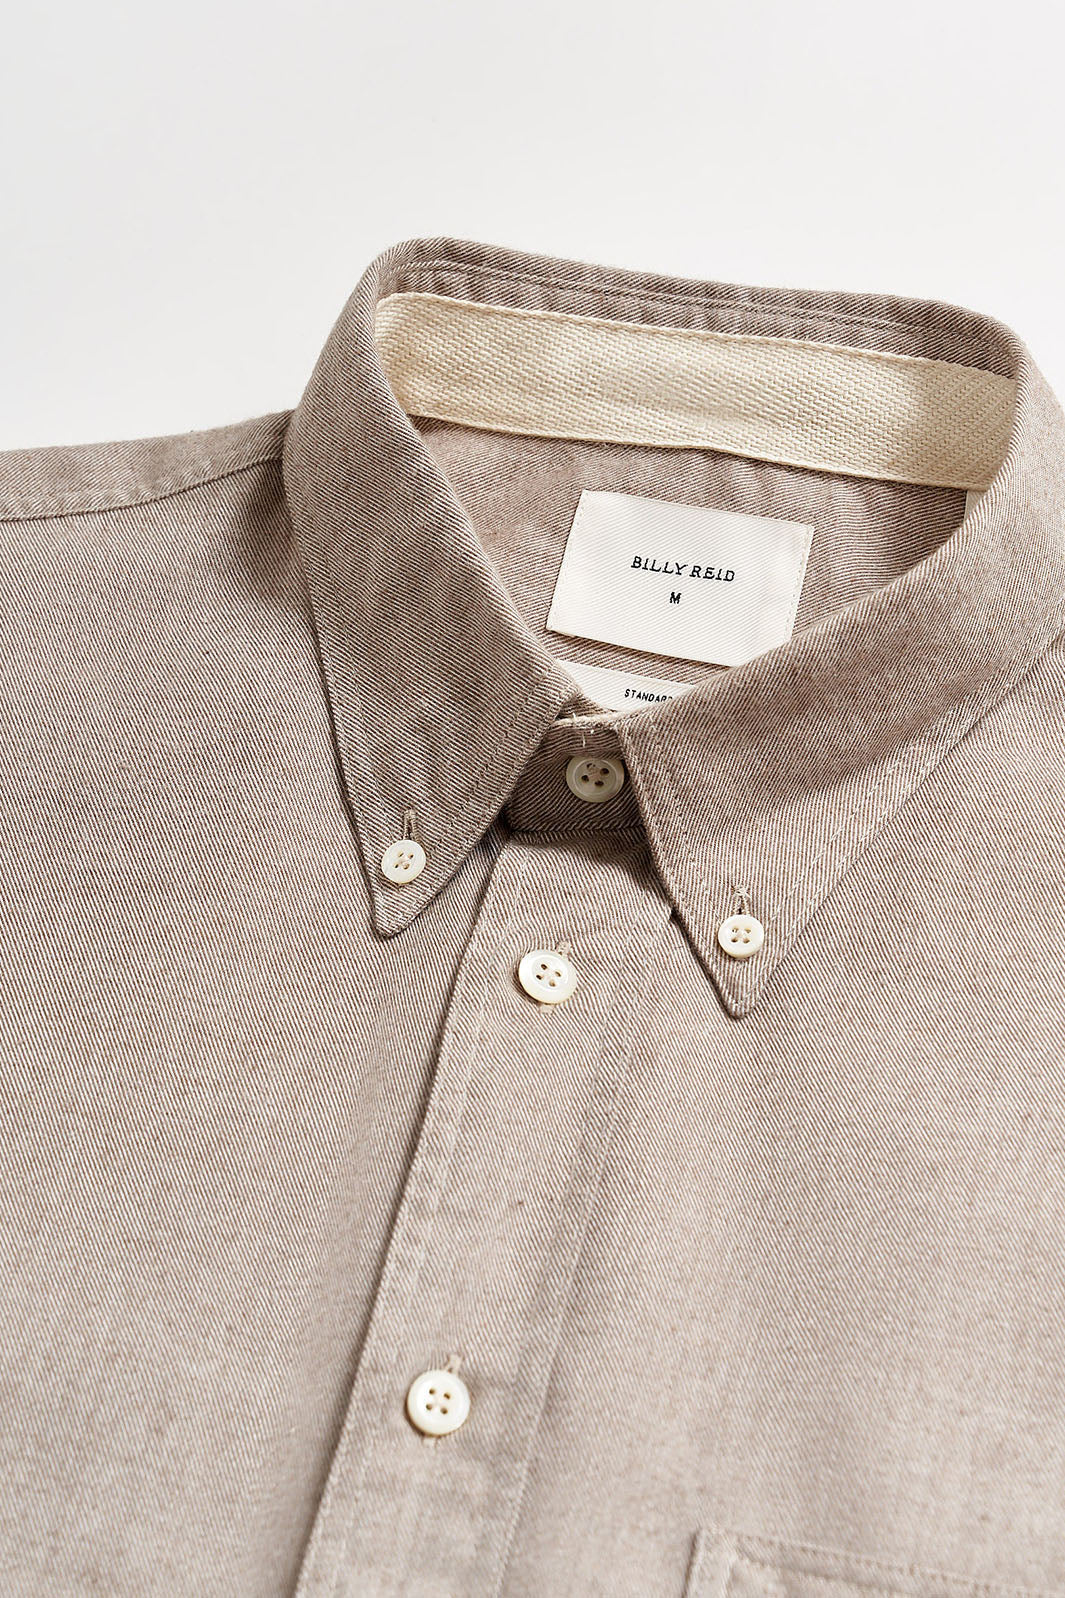 Tuscumbia Classic Button-Up Shirt - Tan